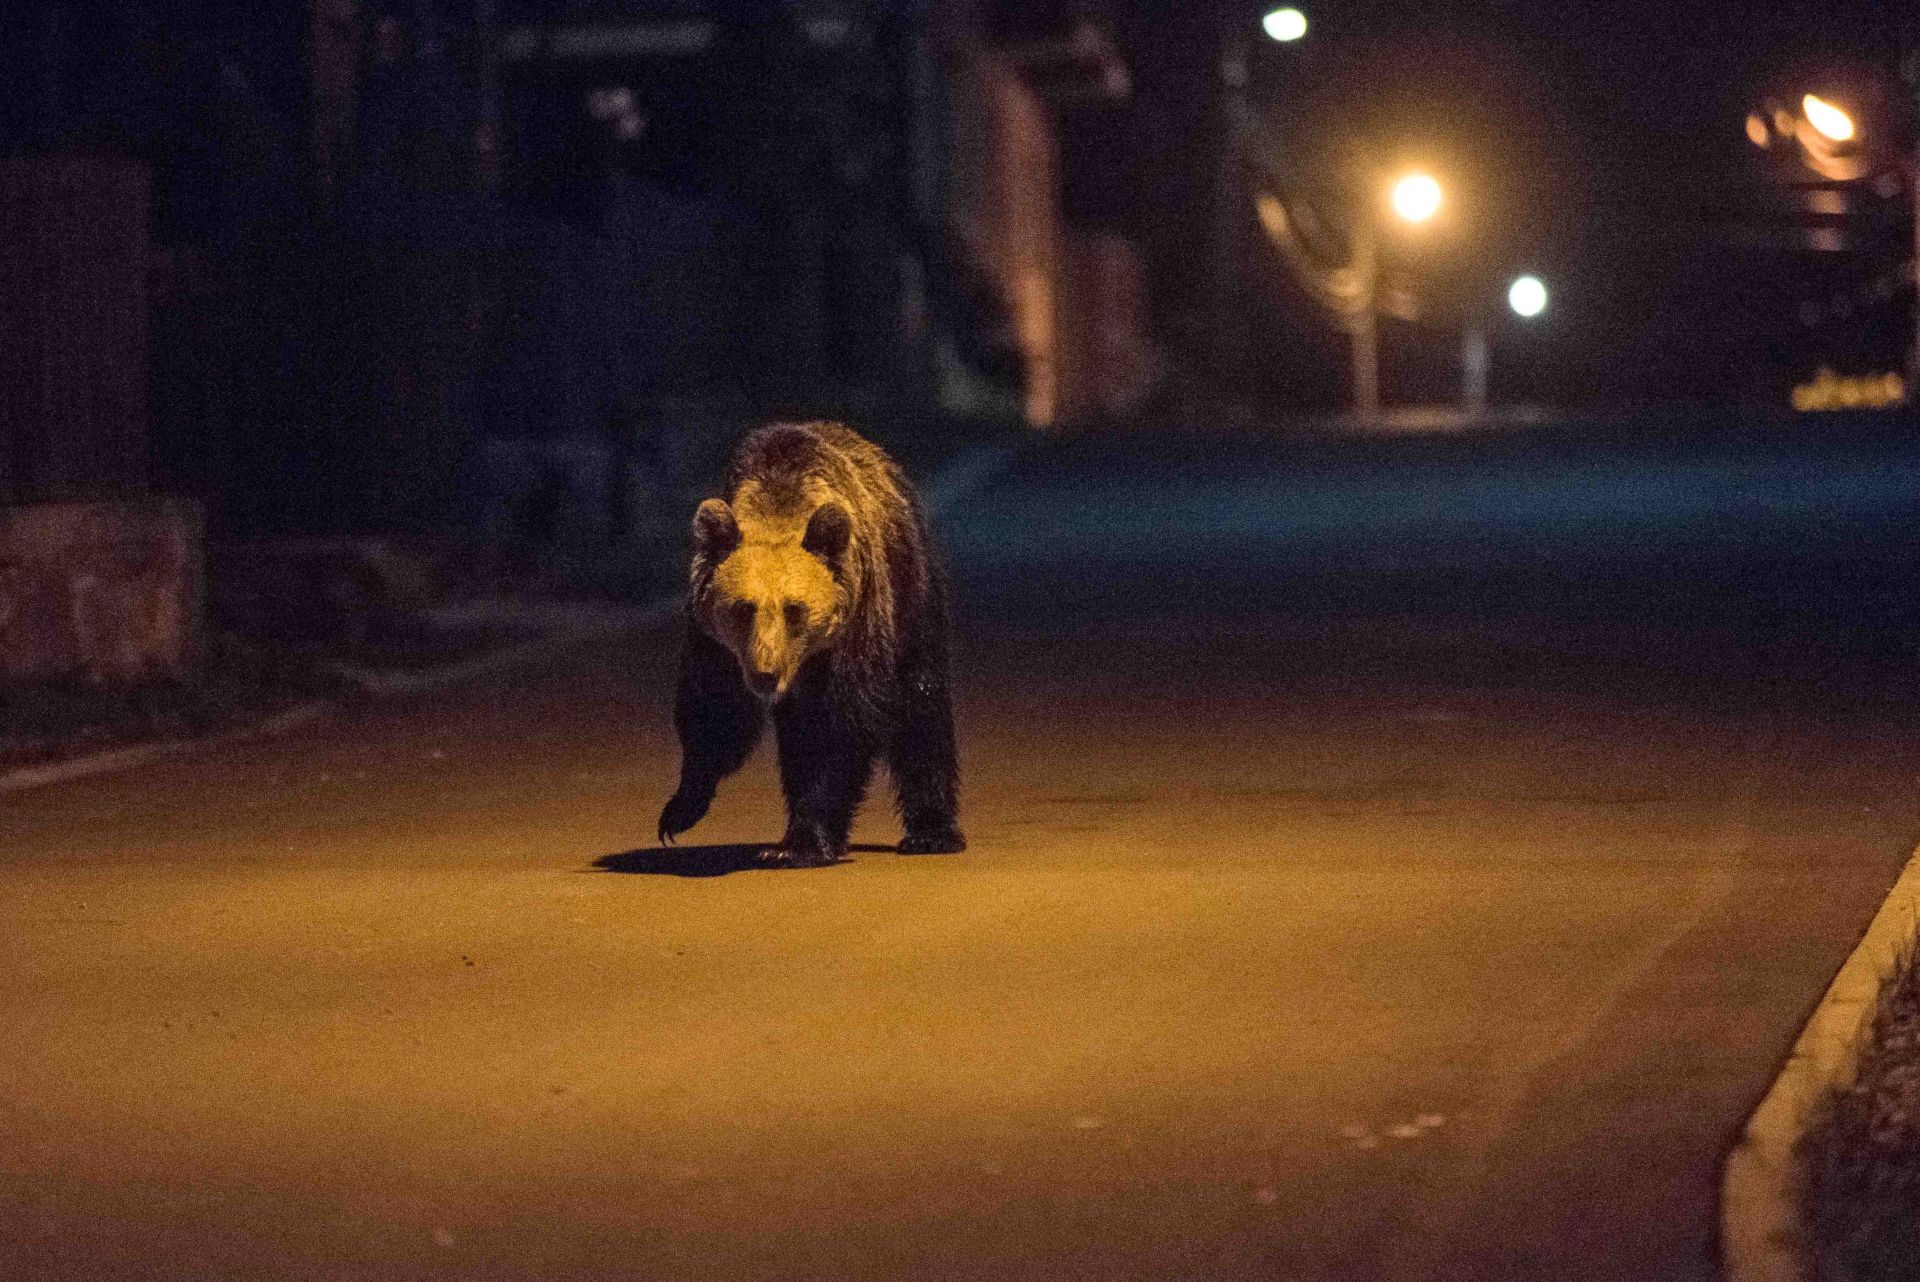 Olimpiai helyszínen garázdálkodott egy medve, lelőtték - Videó